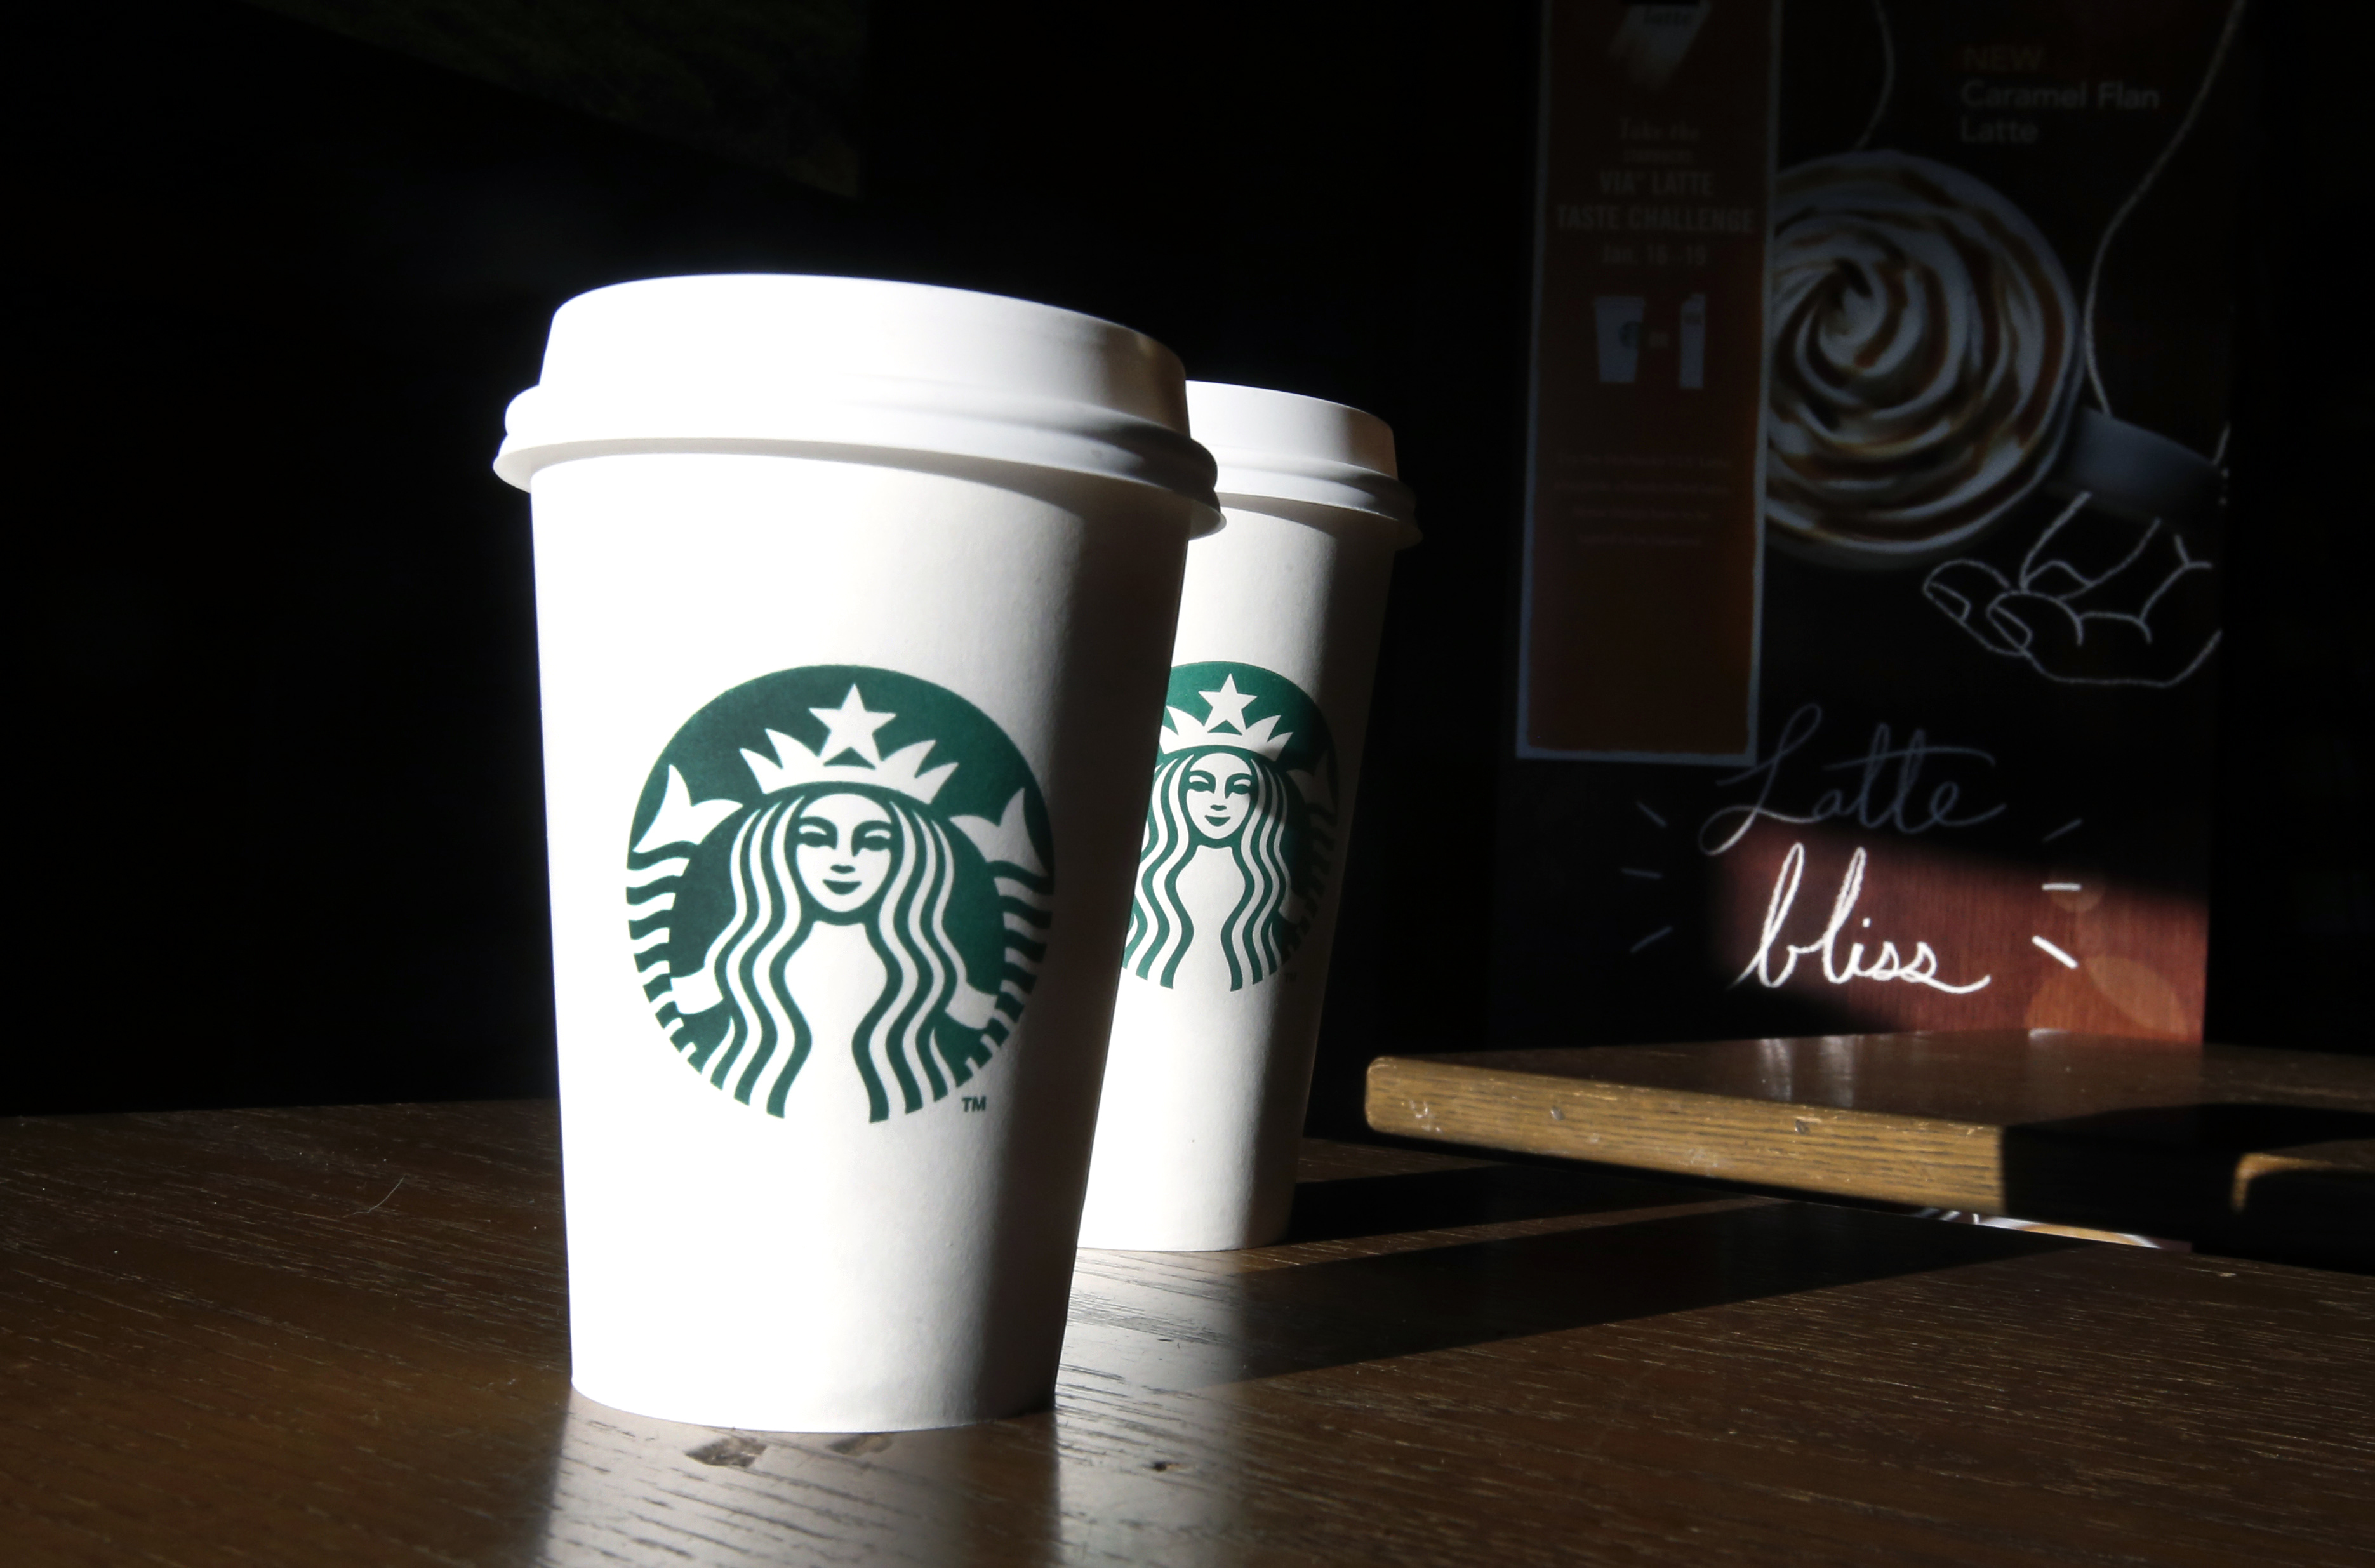 Μαρινόπουλος: Διαψεύδει ότι βγάζει στο σφυρί τα Starbucks